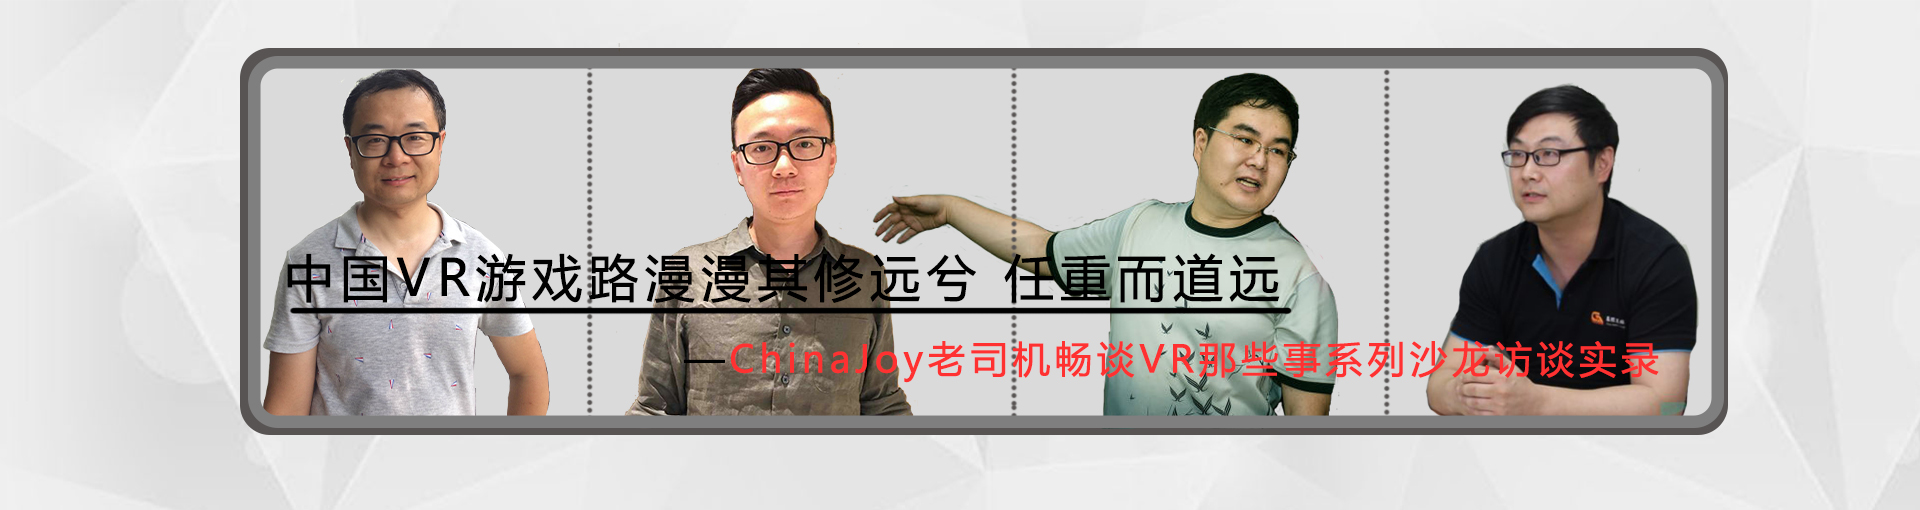 中国VR游戏路漫漫其修远兮 任重而道远 —Chinajoy老司机畅谈VR那些事系列沙龙访谈实录